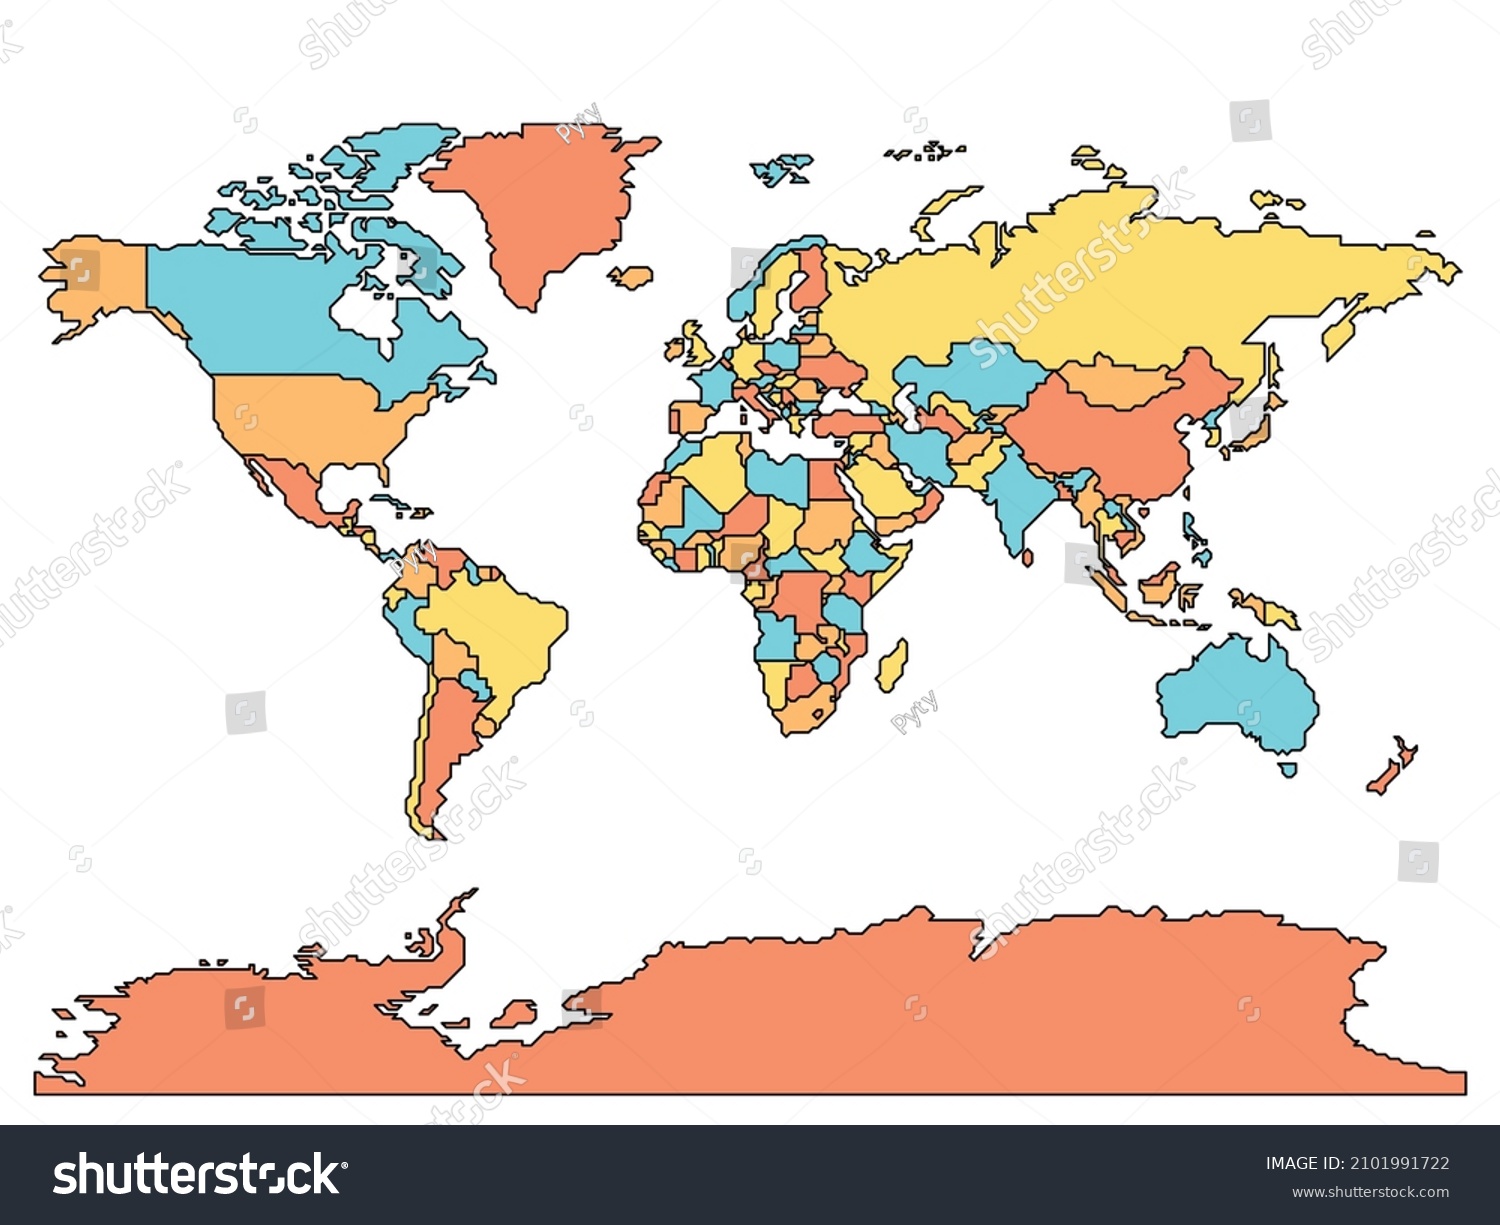 Mapa Mundial Simplificado De Borde Suave Vector De Stock Libre De